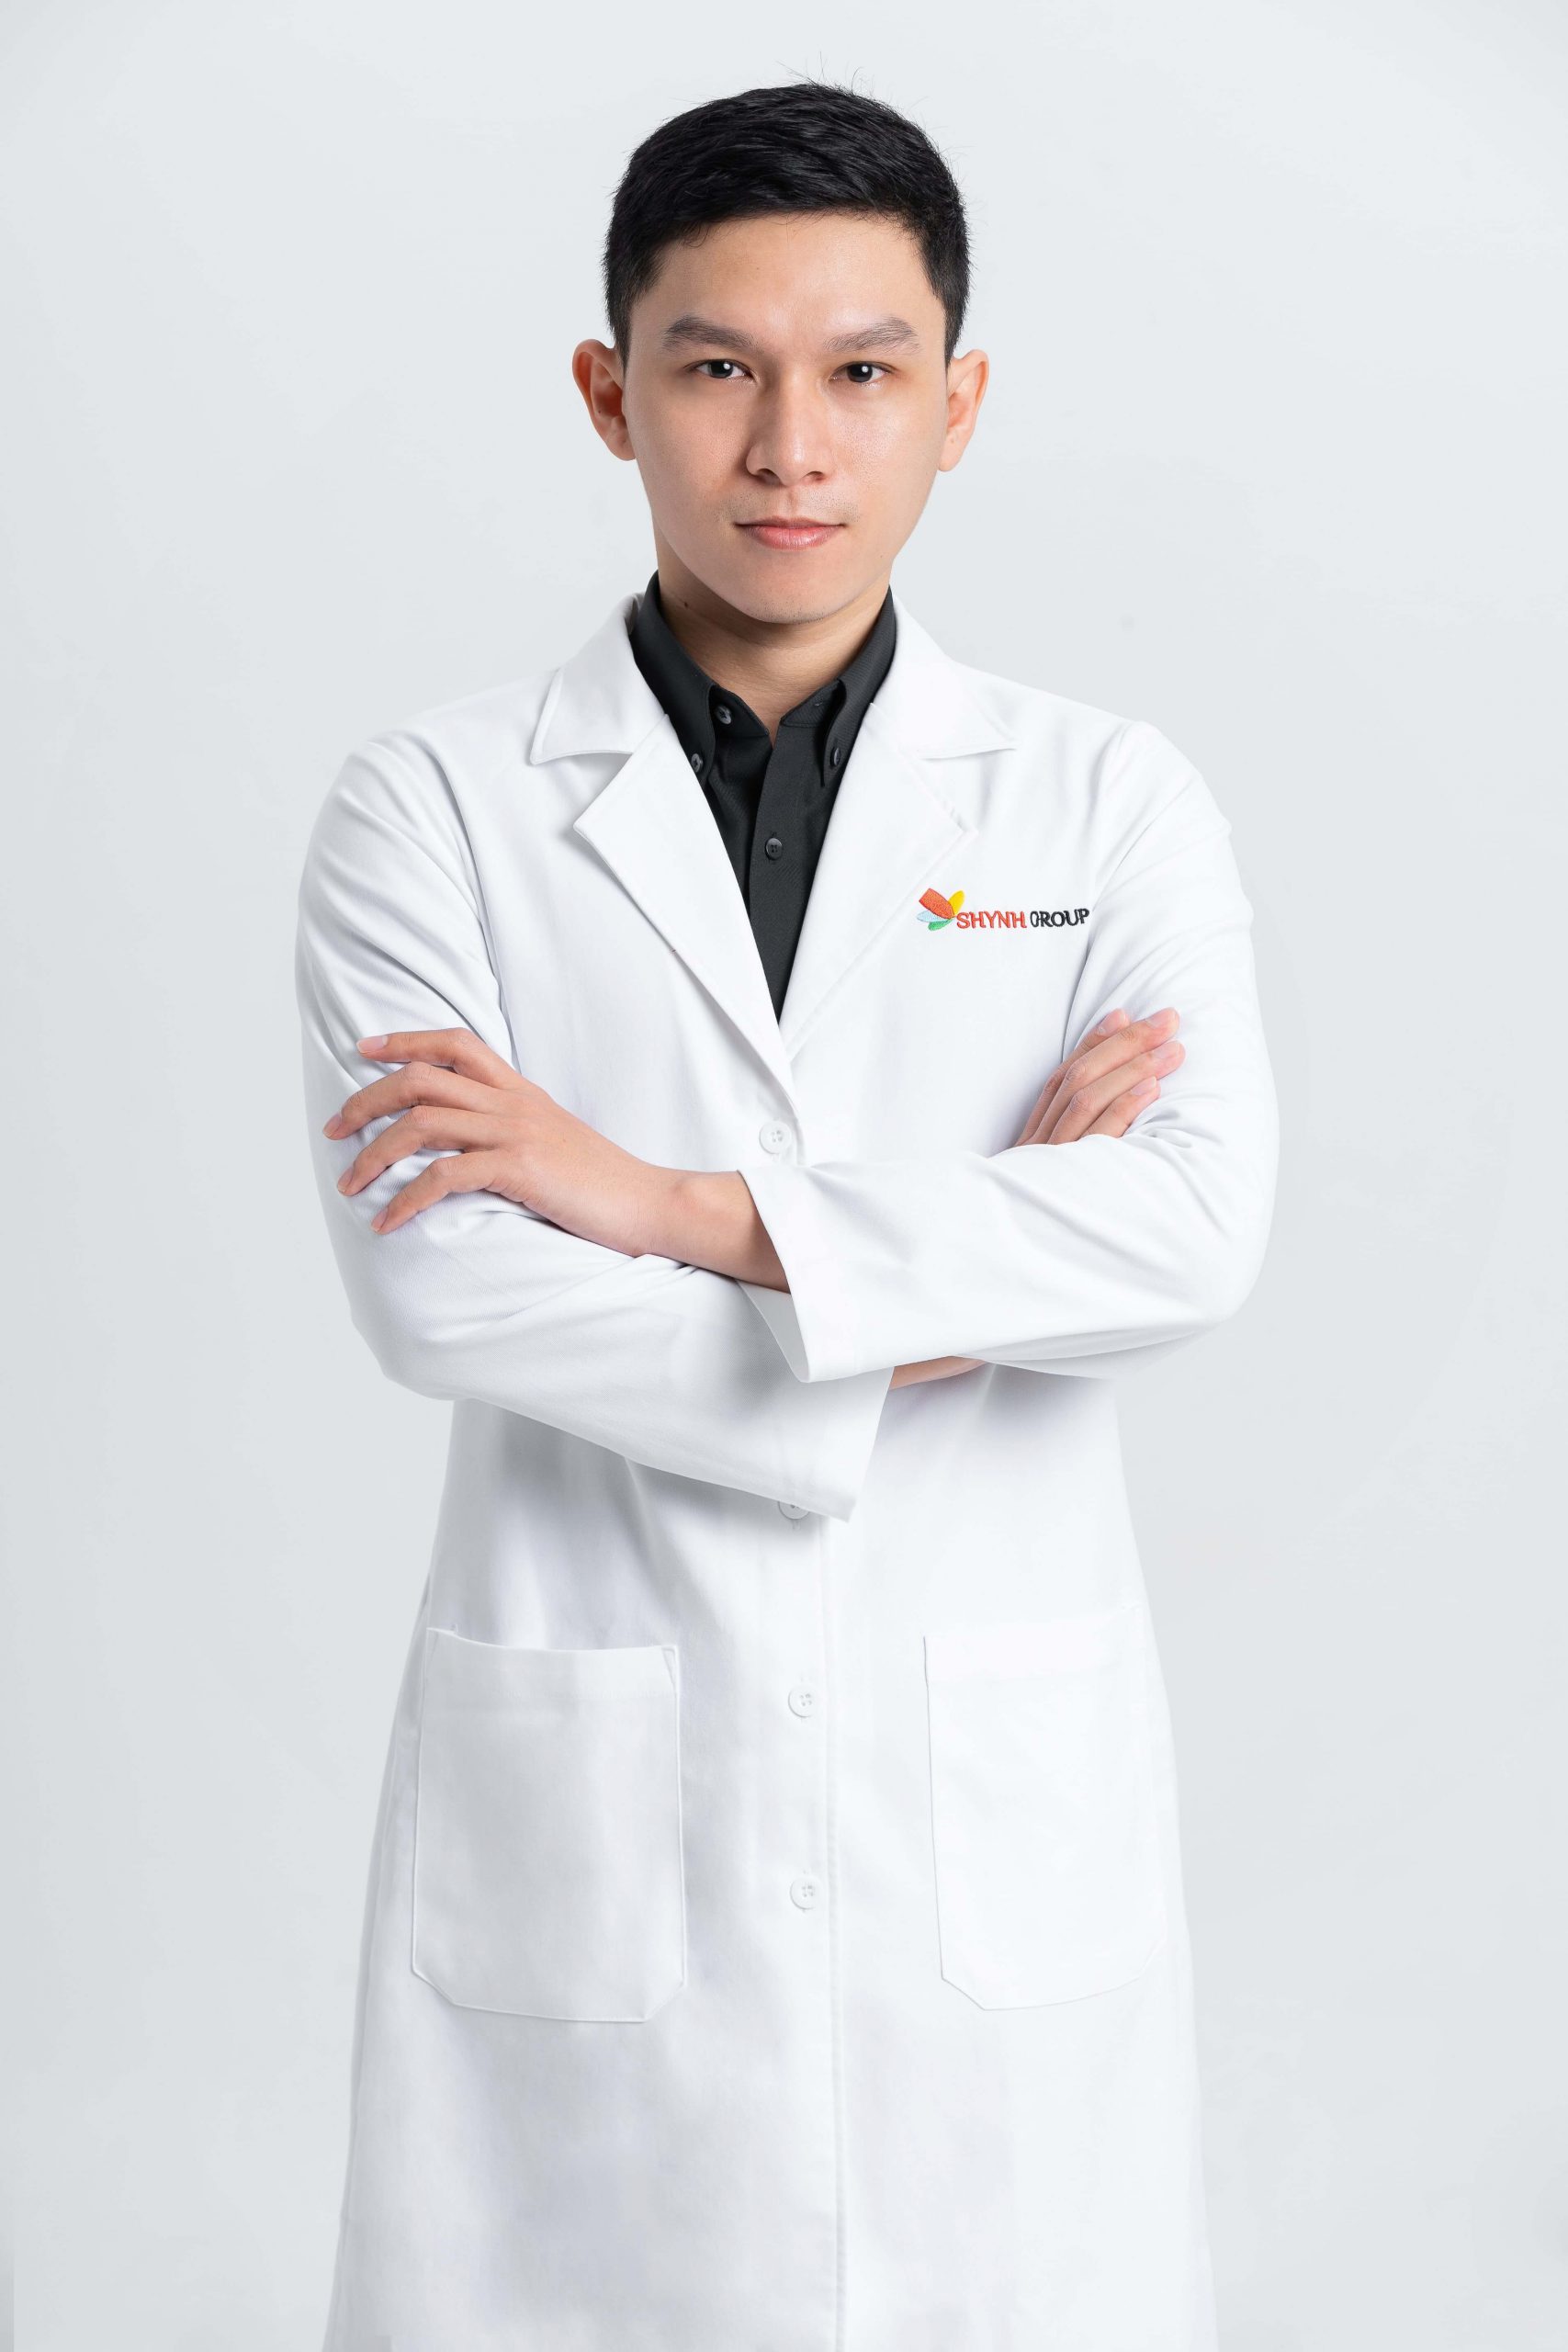 Dr. NGUYỄN THANH TÂM